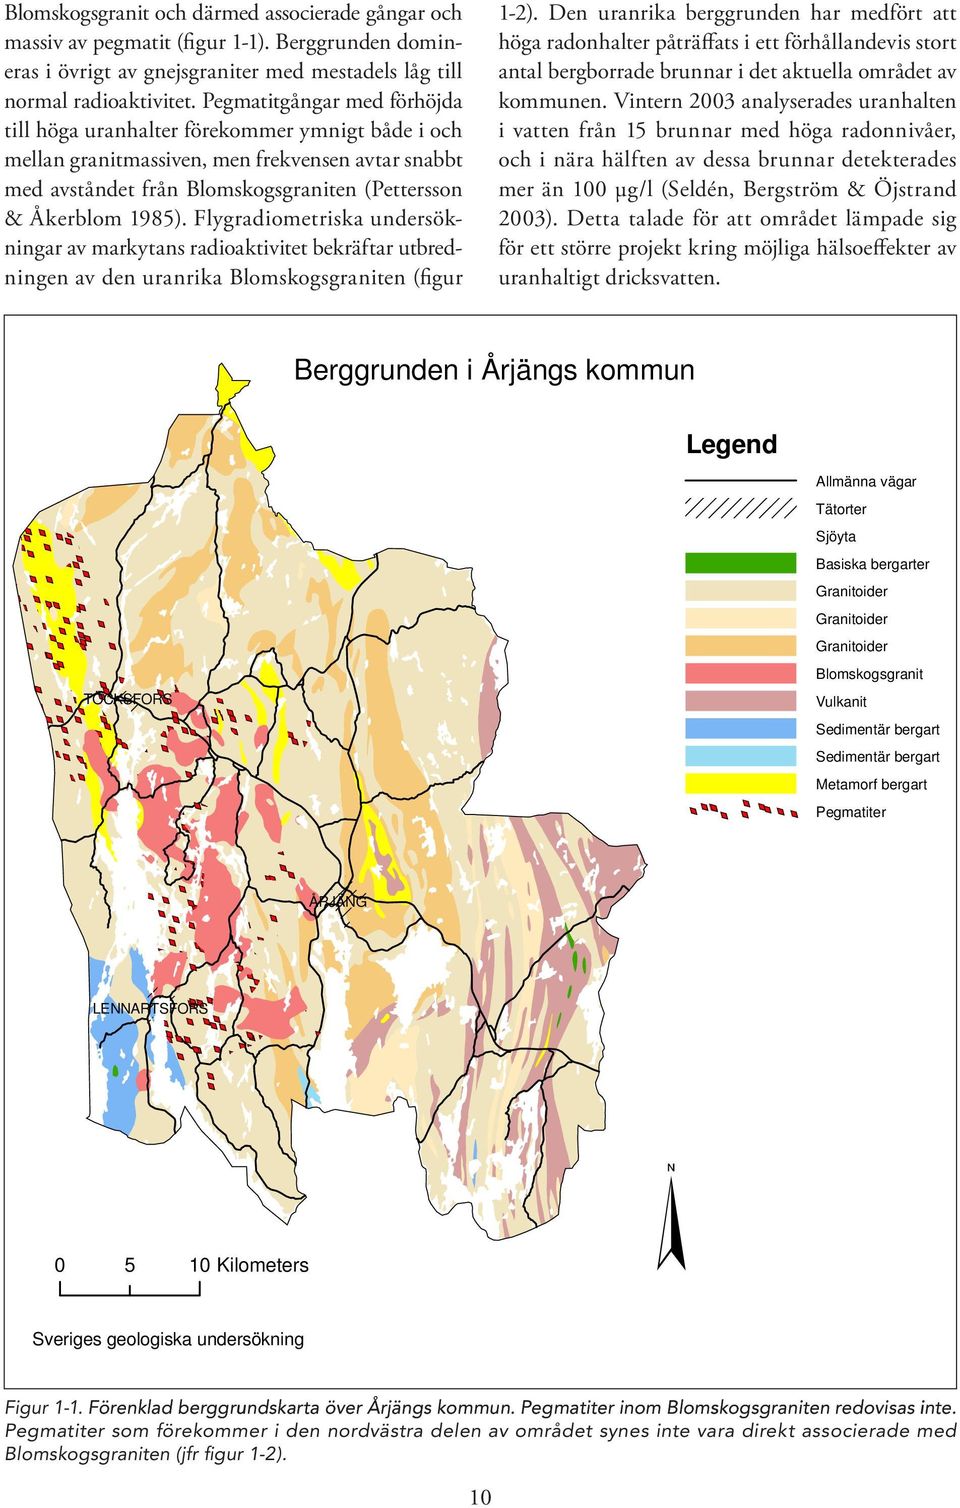 Flygradiometriska undersökningar av markytans radioaktivitet bekräftar utbredningen av den uranrika Blomskogsgraniten (figur 1-2).